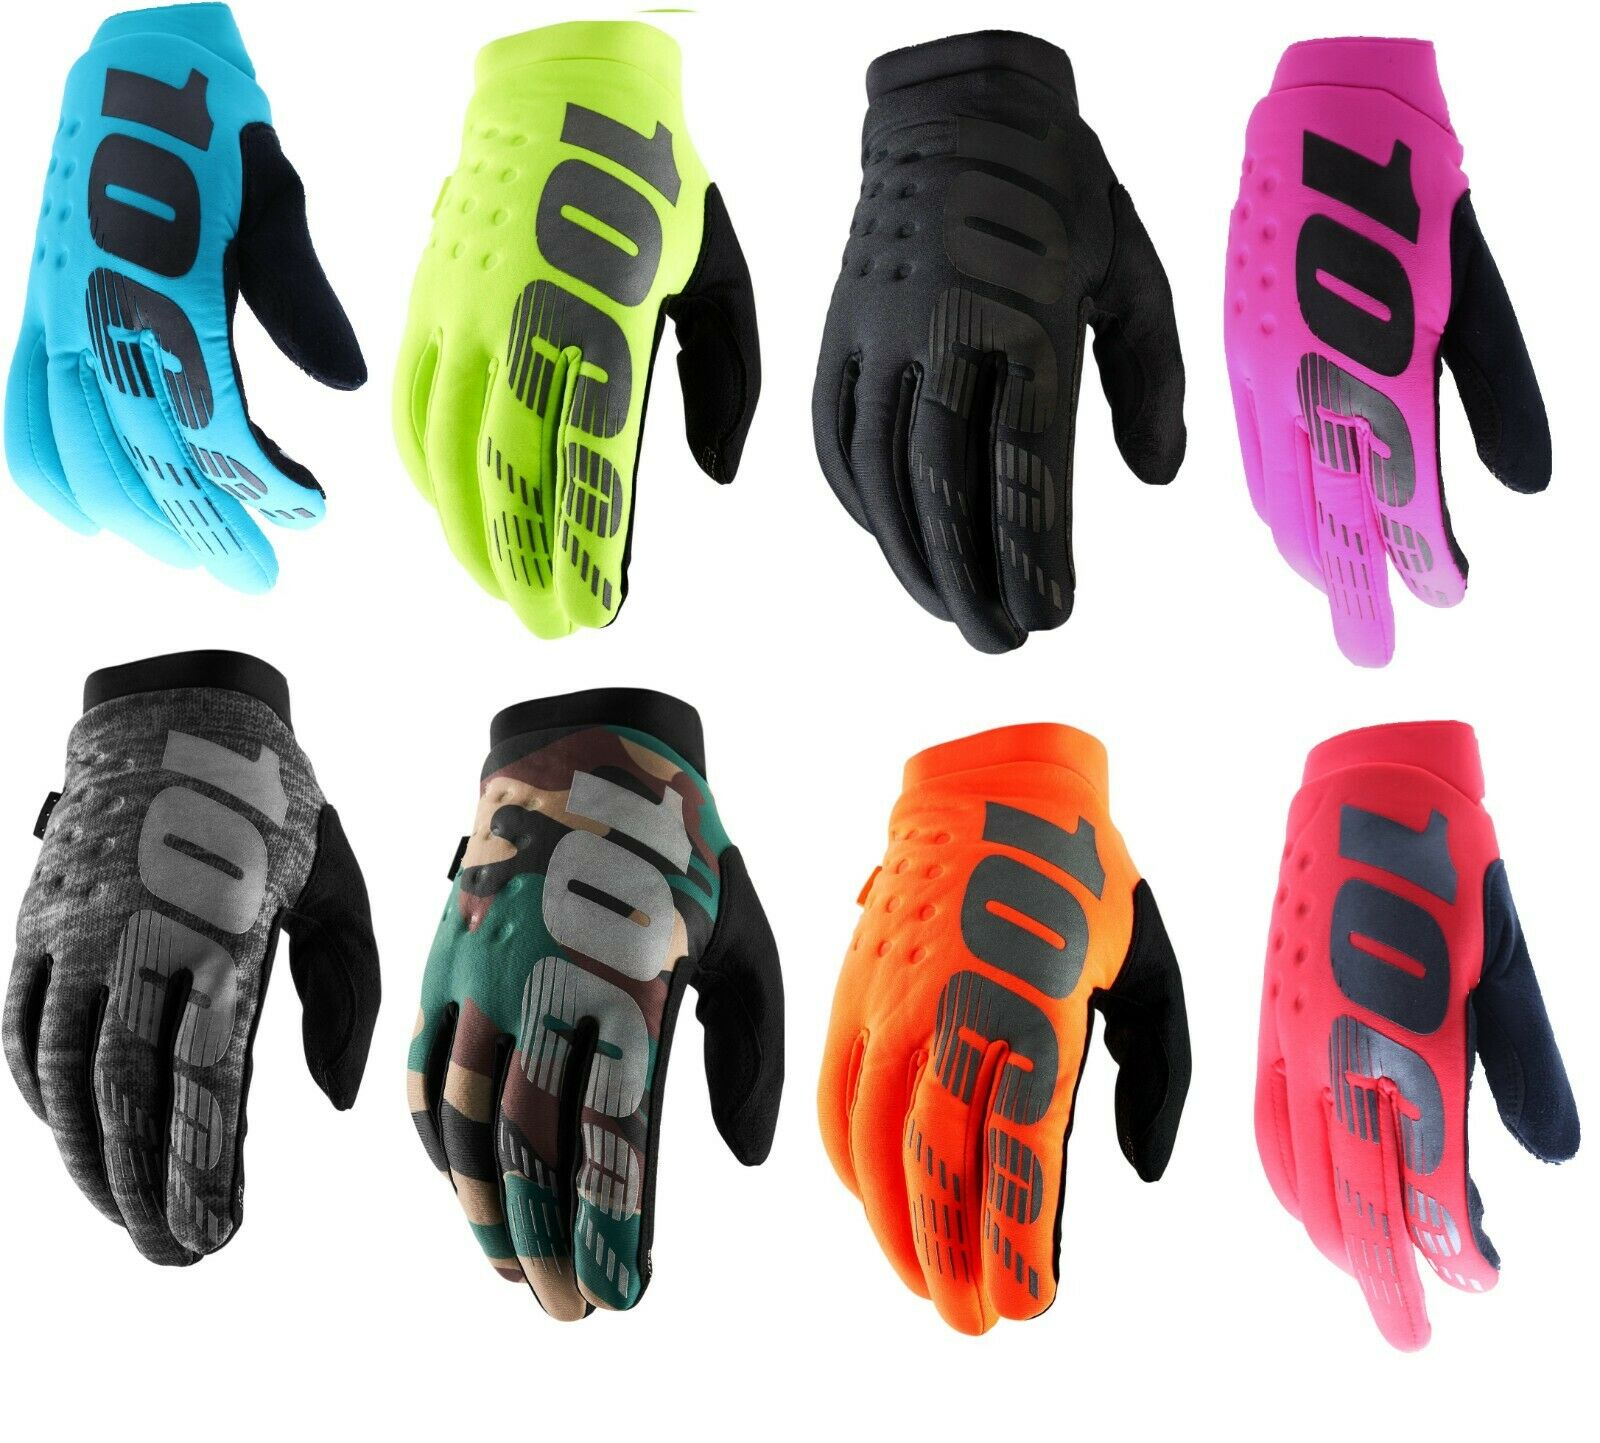 100% Brisker Kaltes Wetter Winter Motocross Enduro Bike Handschuhe Neon Orange / 